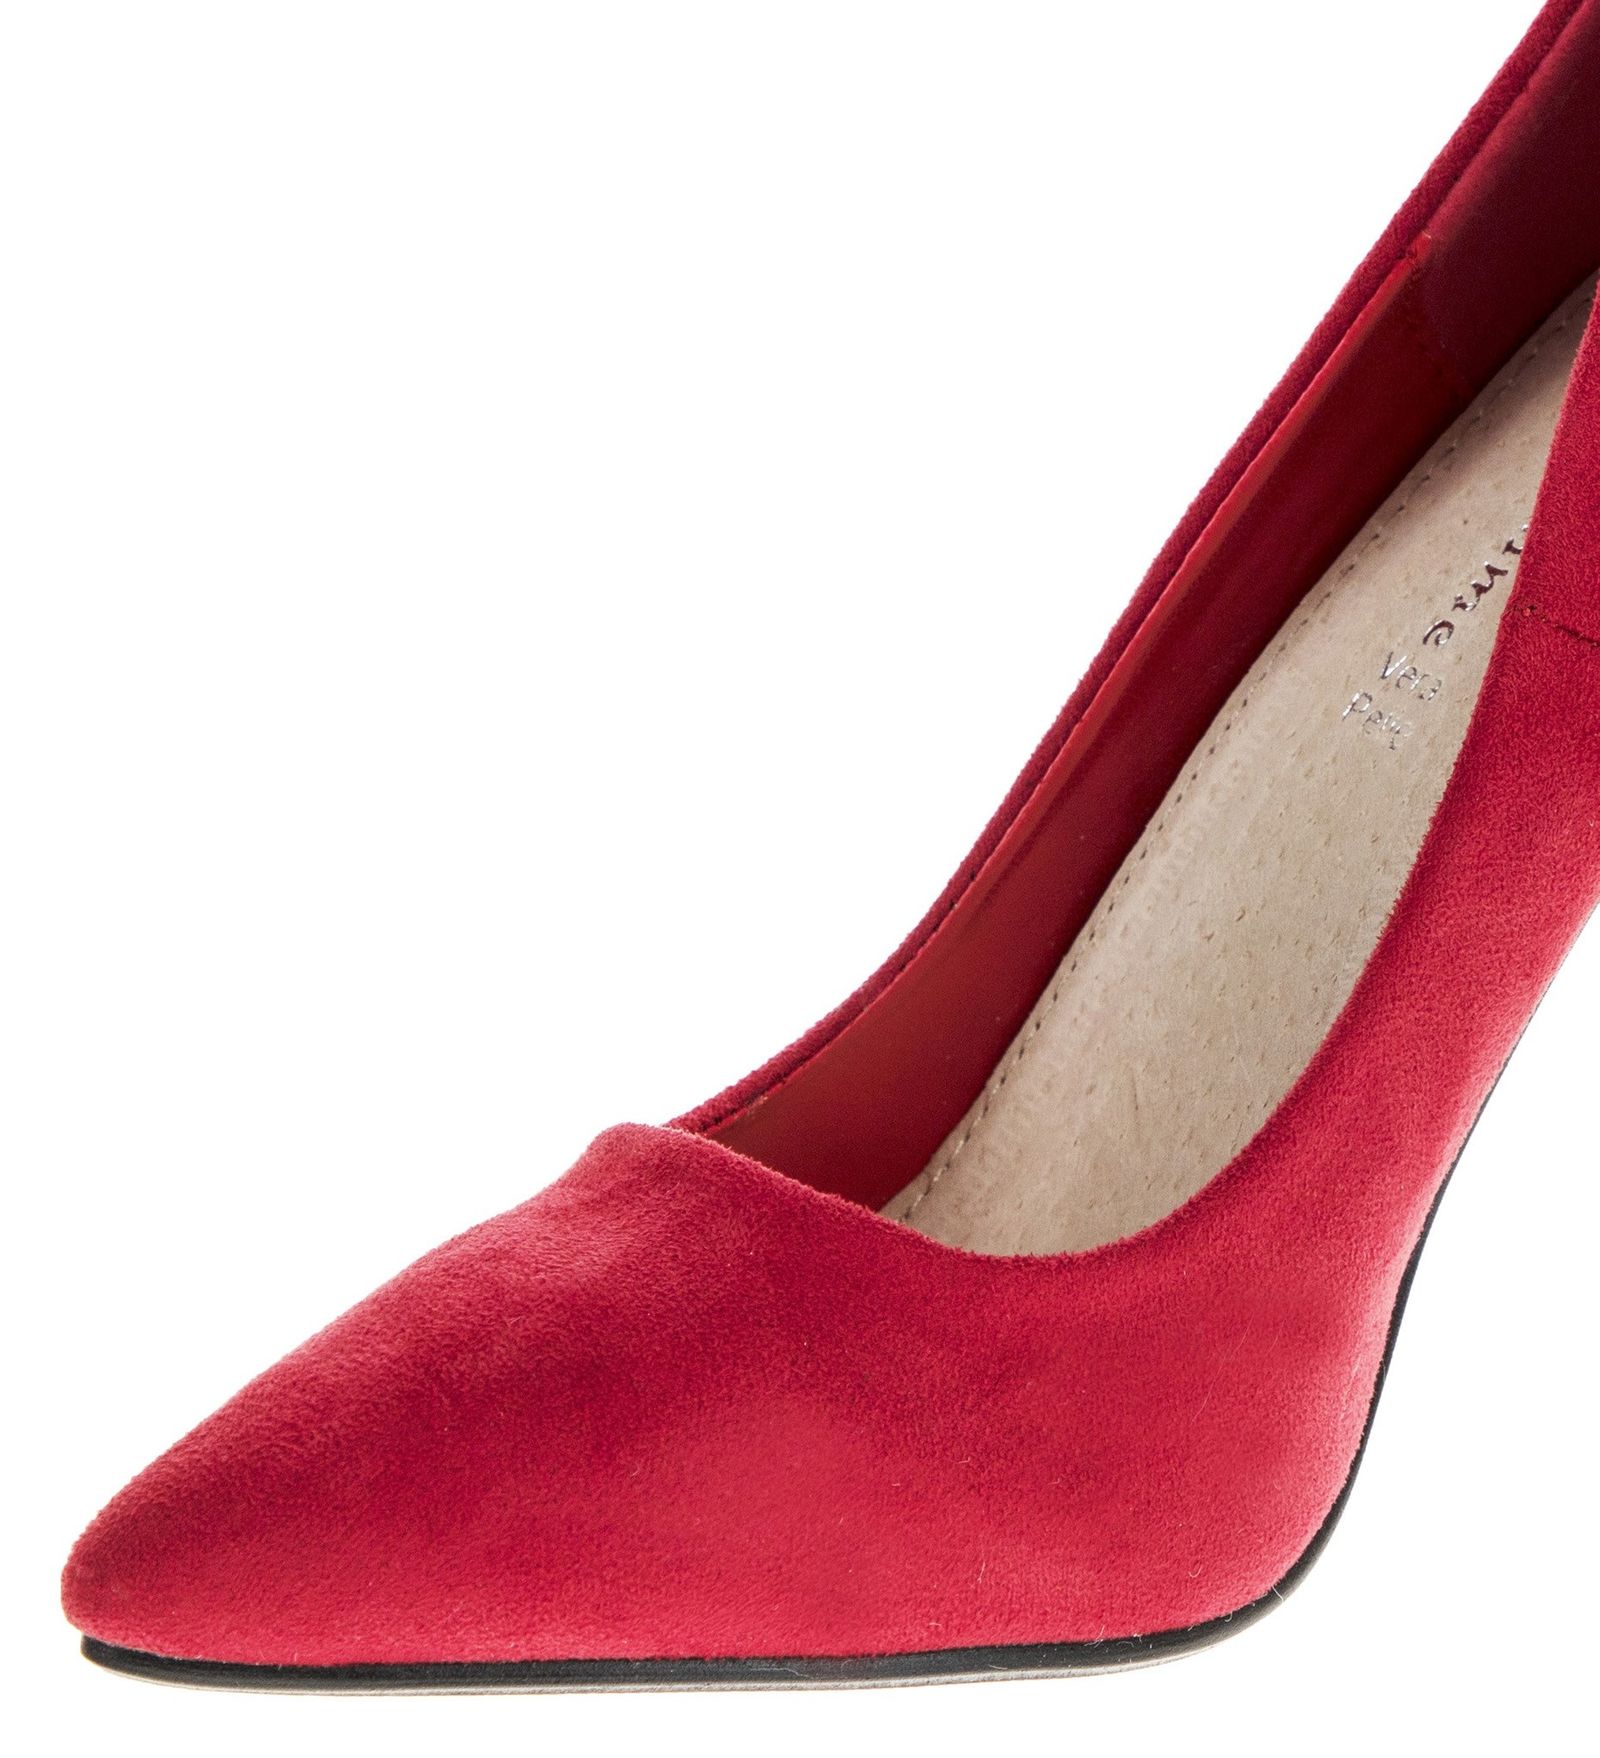 کفش پاشنه بلند زنانه - مادام - قرمز - 7